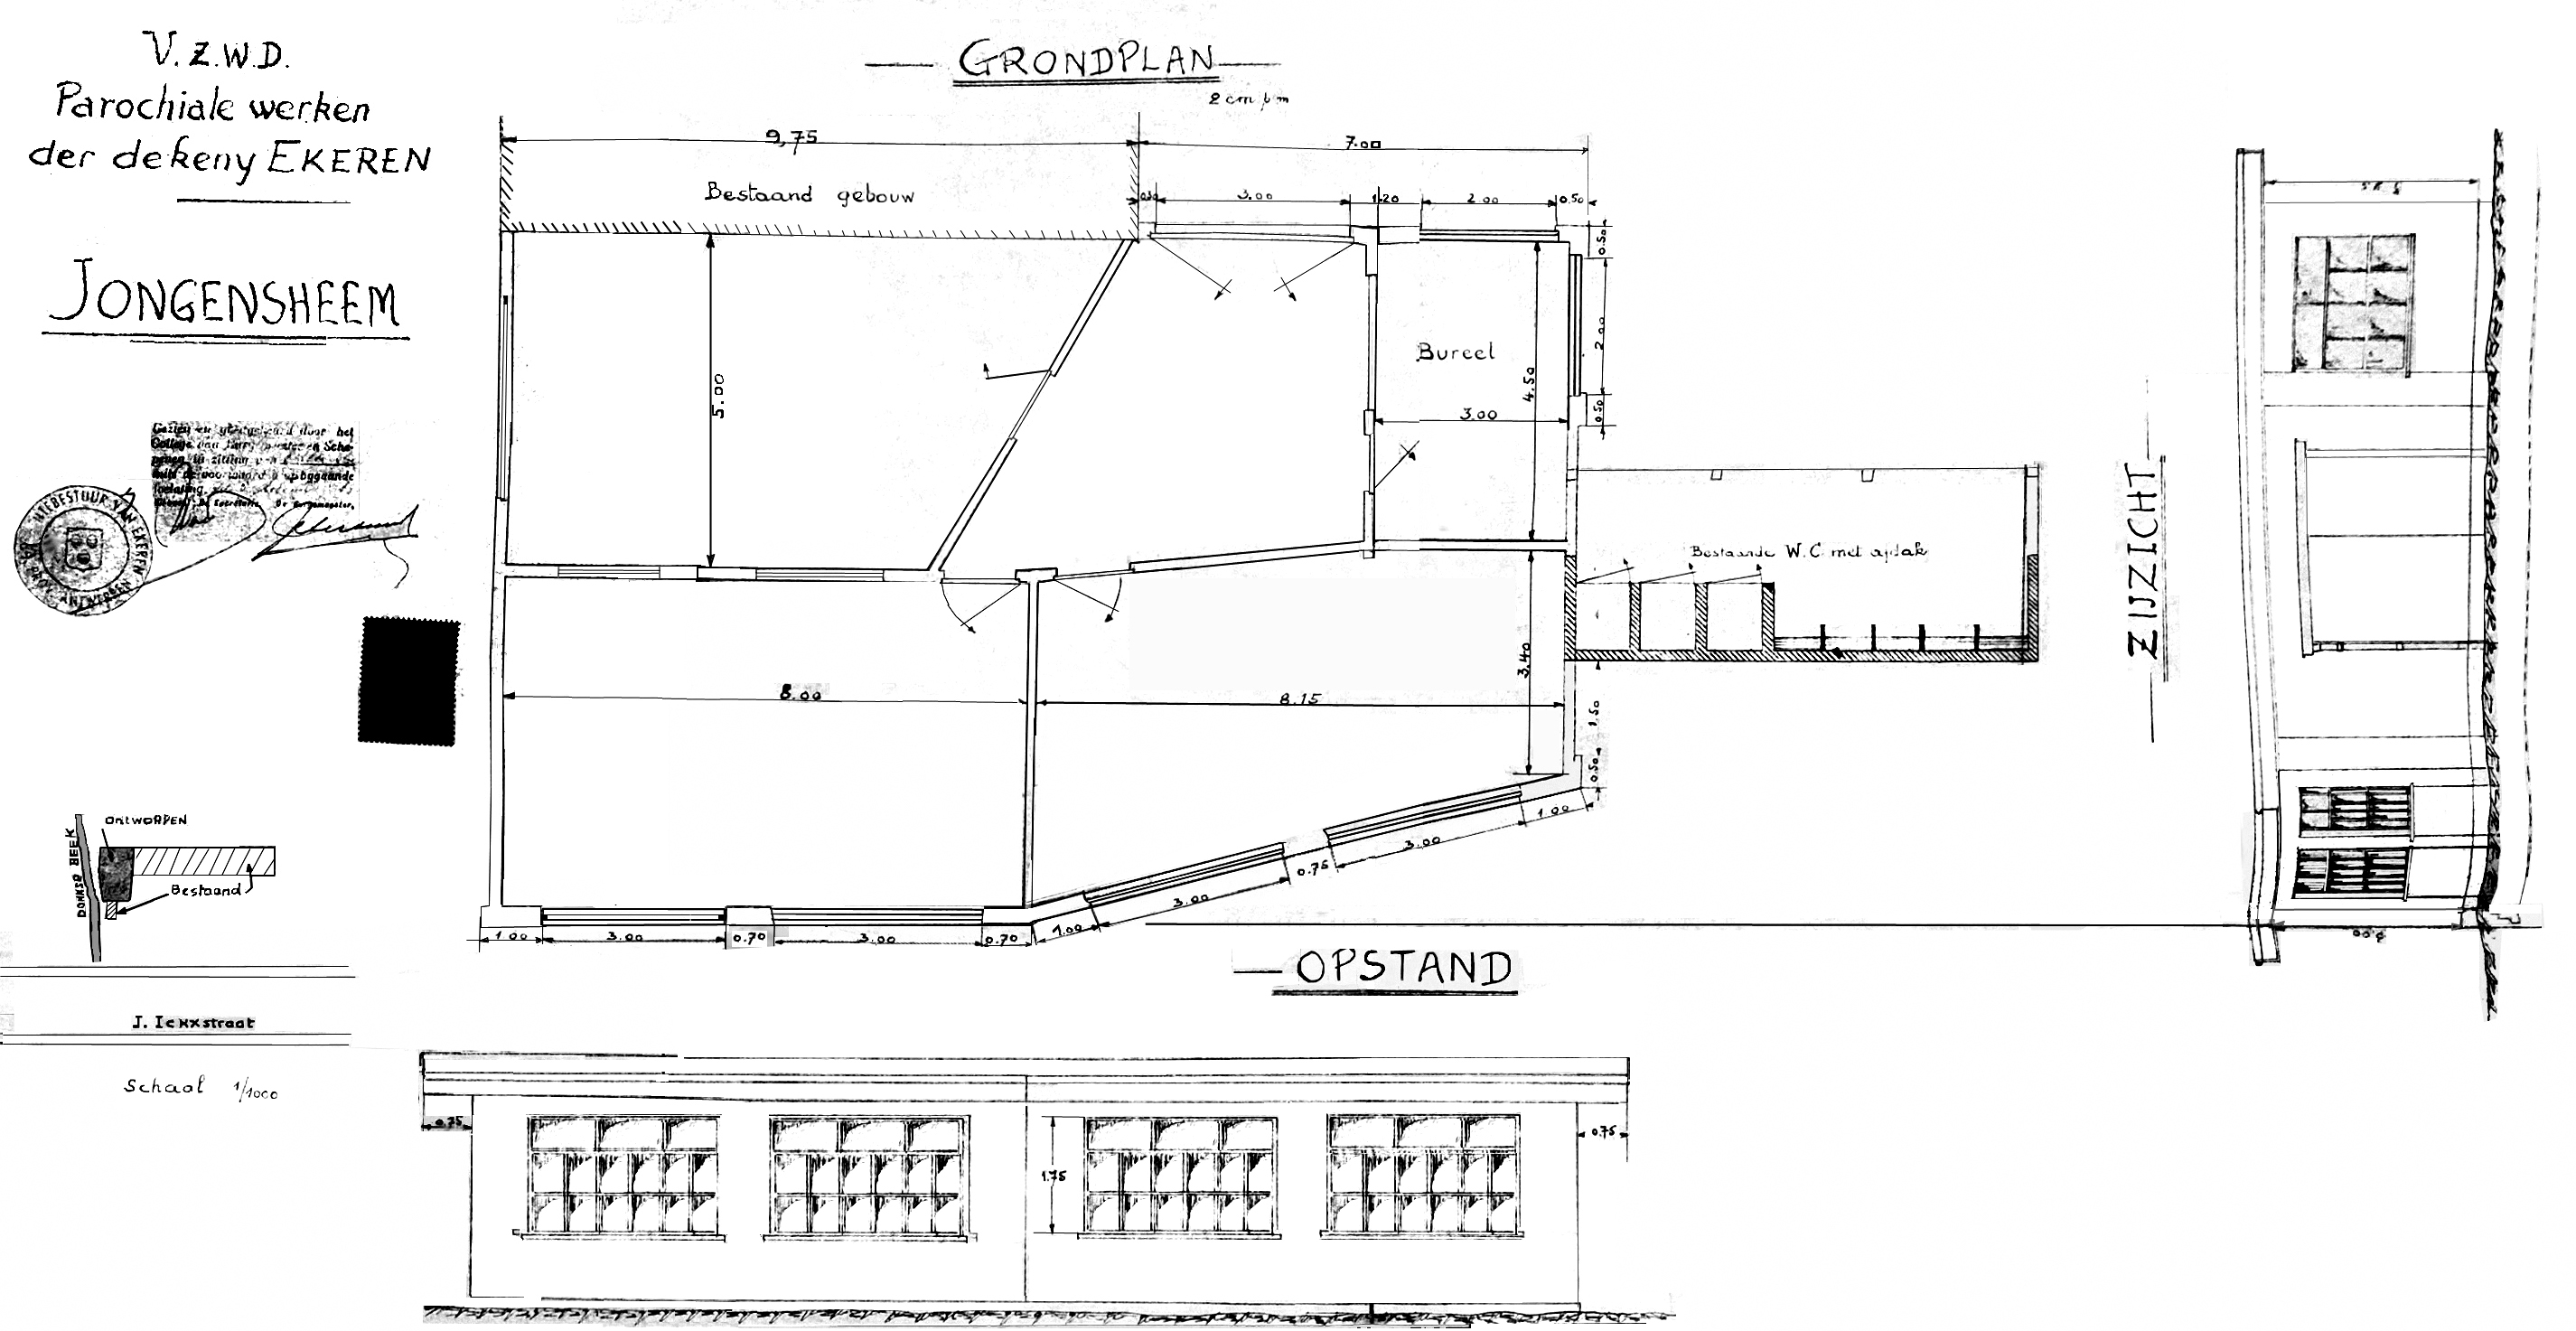 bouwplan chrolokaal 1958